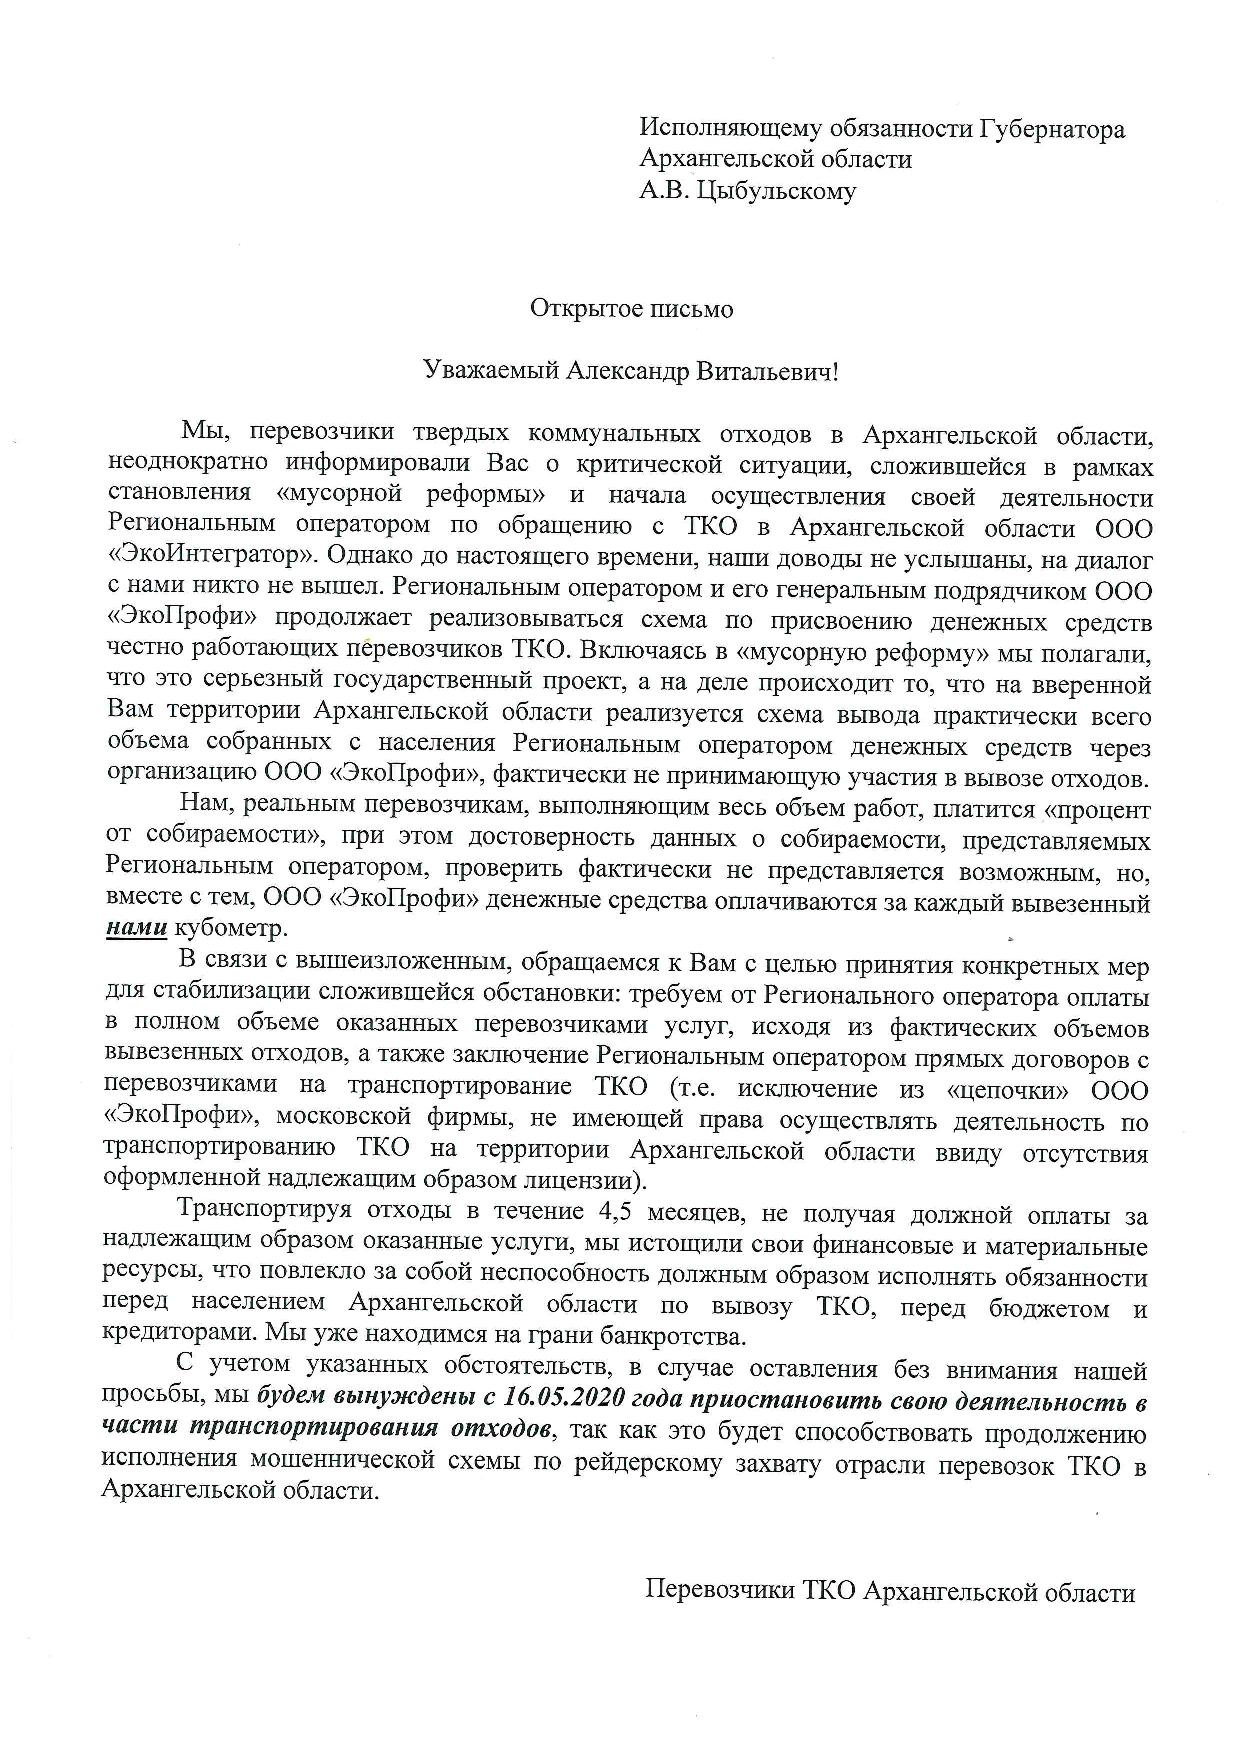 Письмо опубликовали на странице в соцсети самого крупного перевозчика ТКО в Архангельске